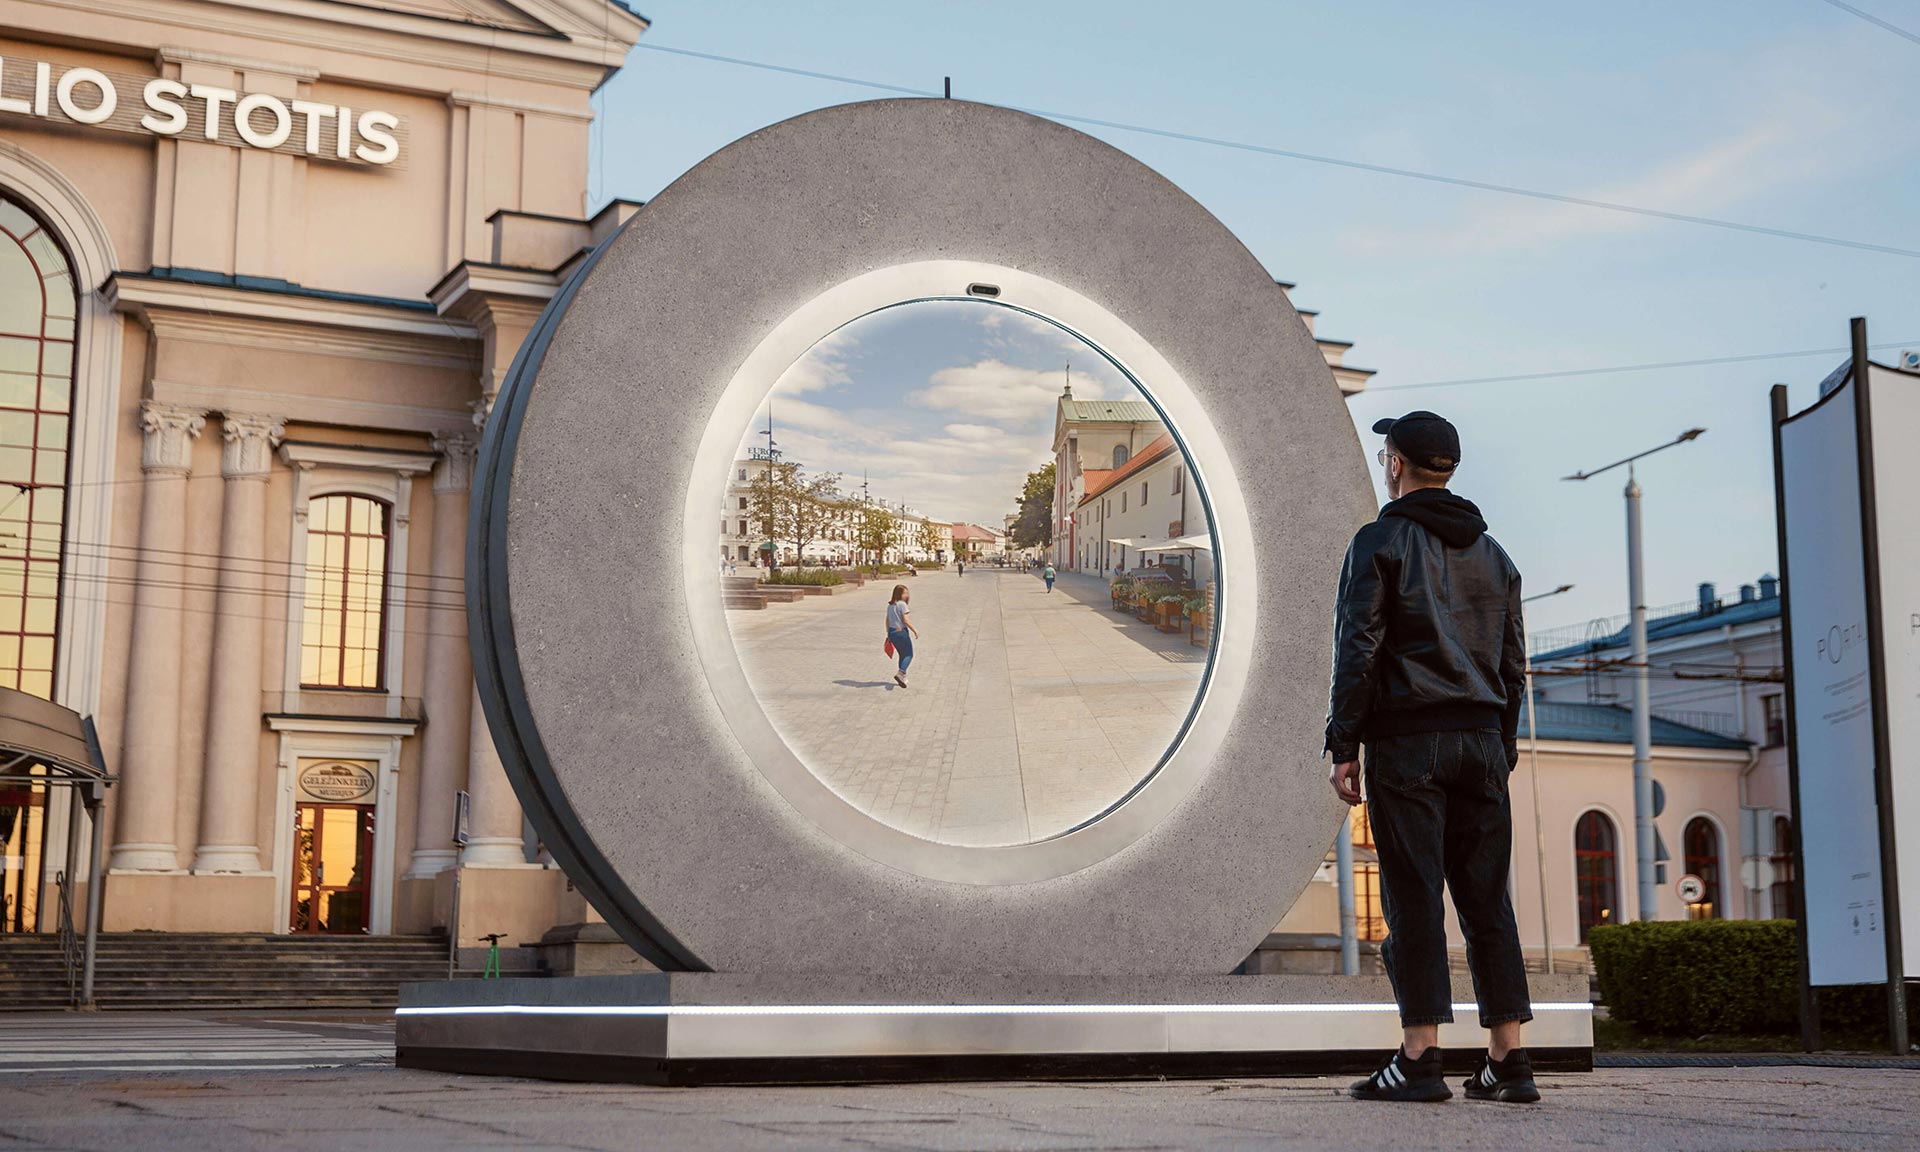 Mezi prvními dvěma městy Vilnius a Lublin vznikl futuristický Portal